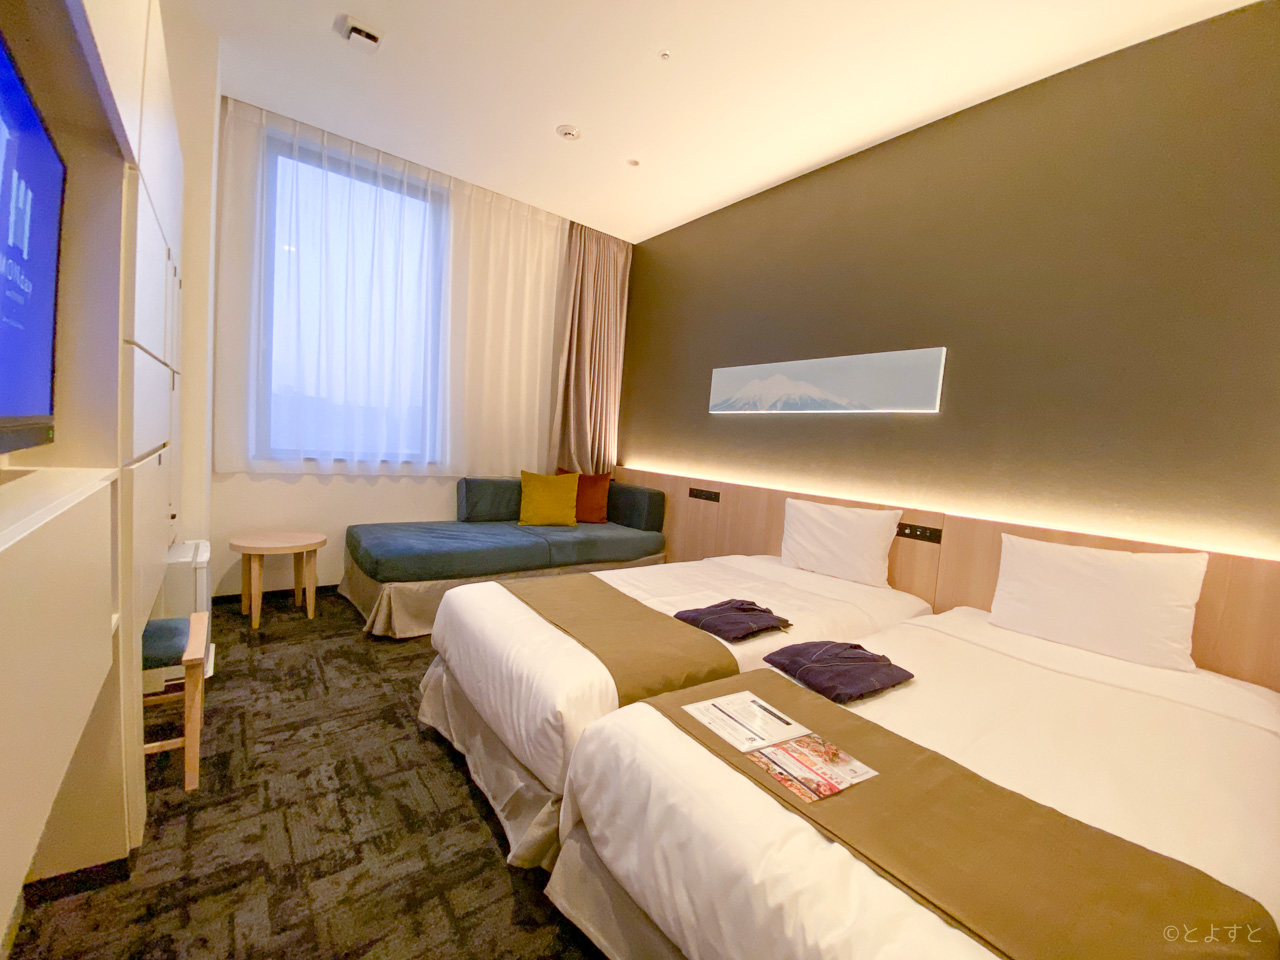 1時間単位で客室が使えるように！ホテルマンデー豊洲、レンタルスペースや着替え・控室にいいかも